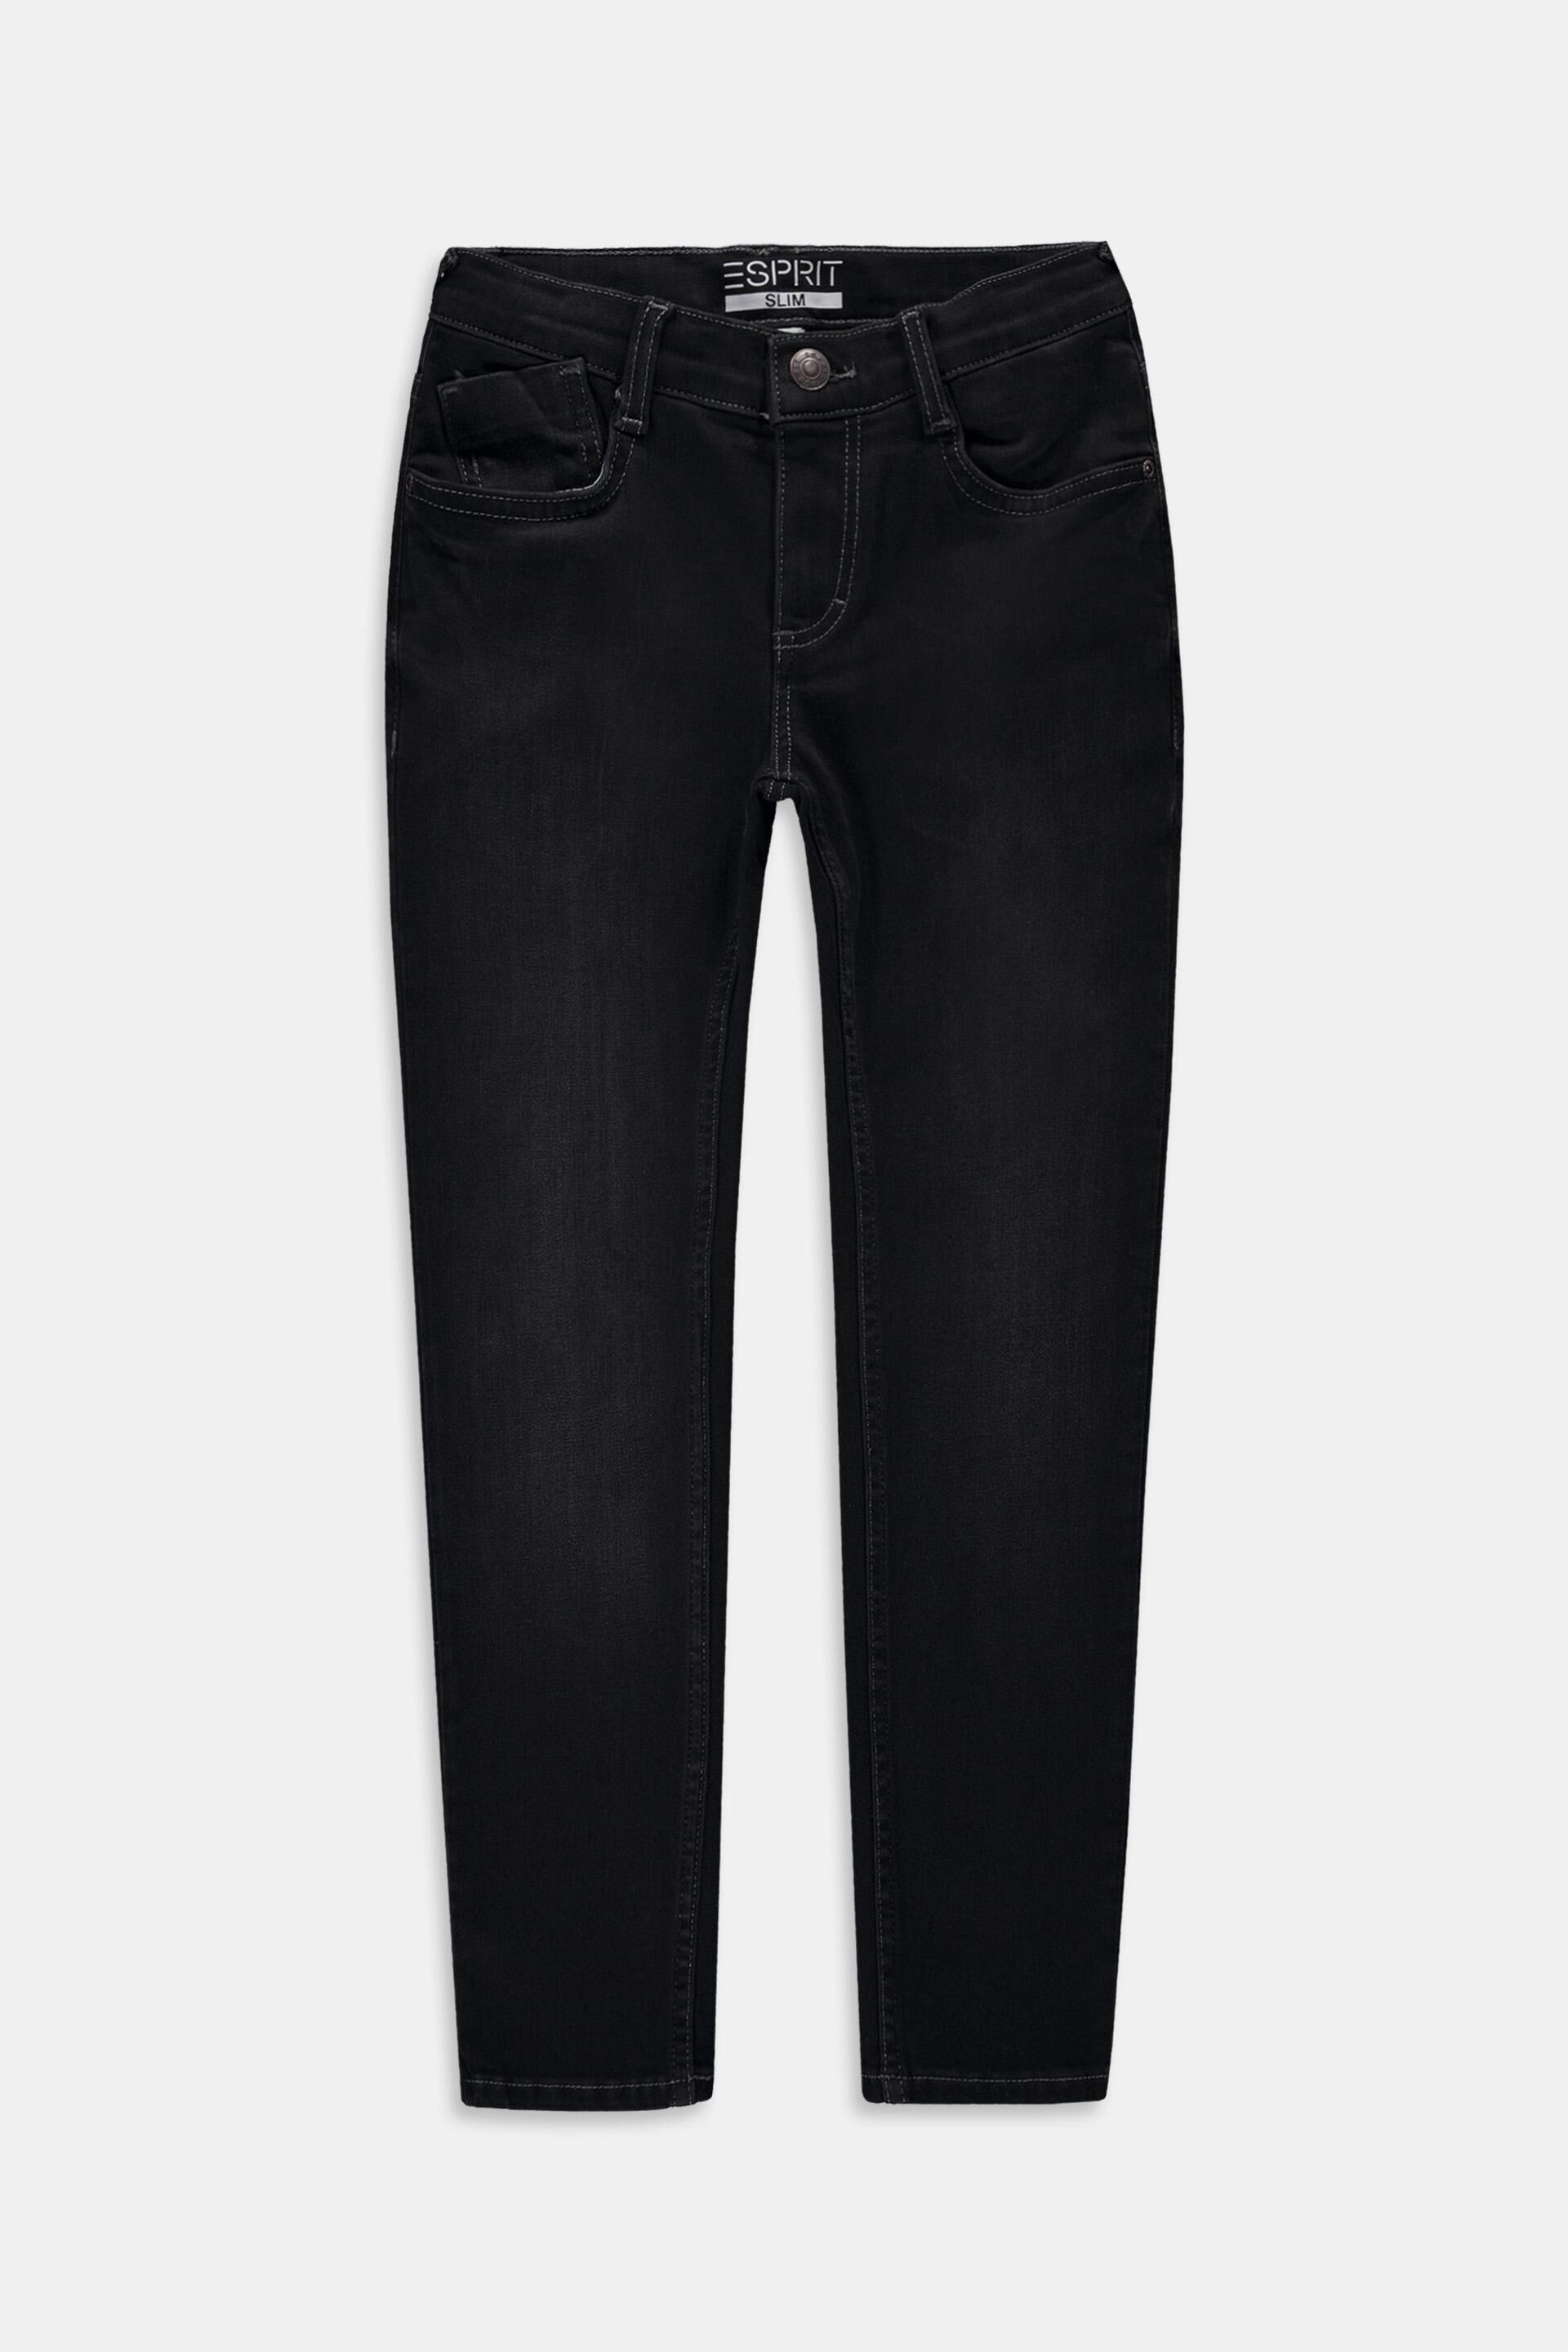 KIDS FASHION Trousers Print Gray/Black 98                  EU Zara slacks discount 98% 